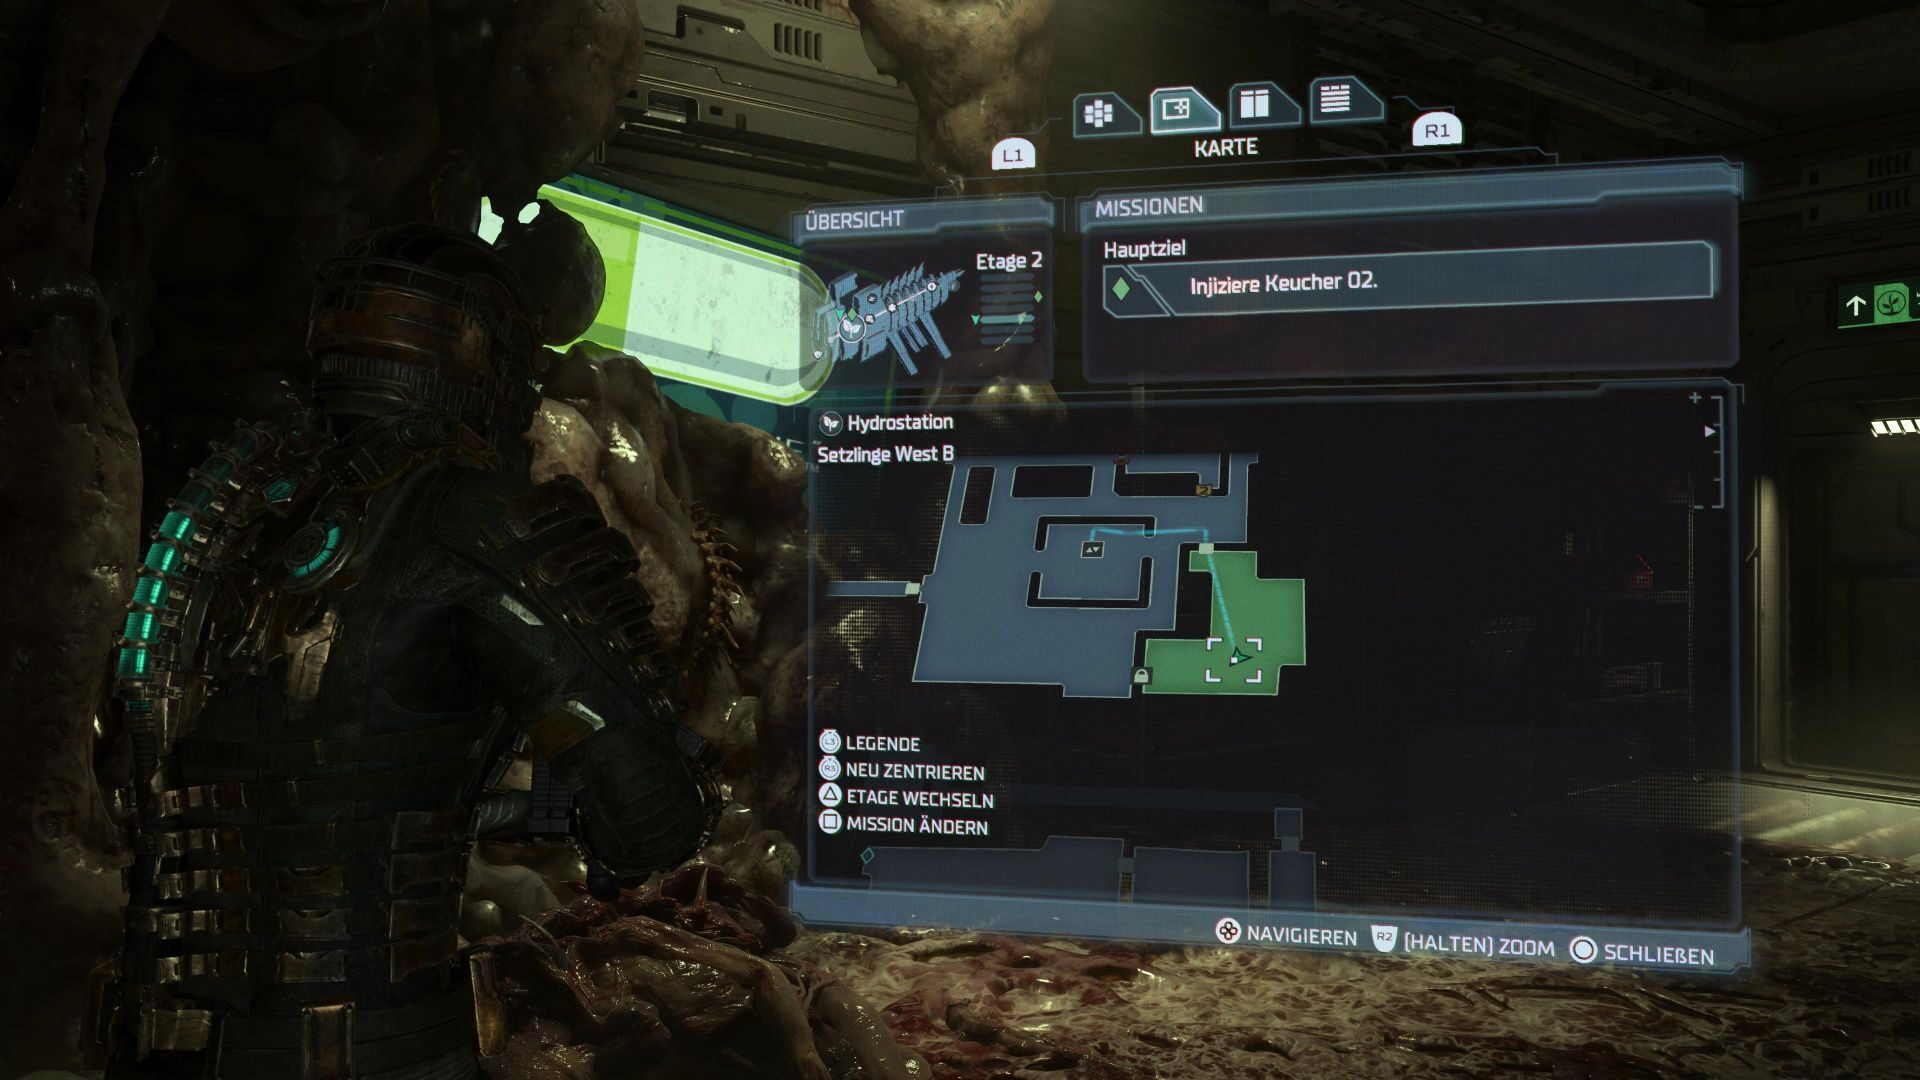 Isaac findet den ersten Keucher in Dead Space und markiert den Fundort auf einer Karte.